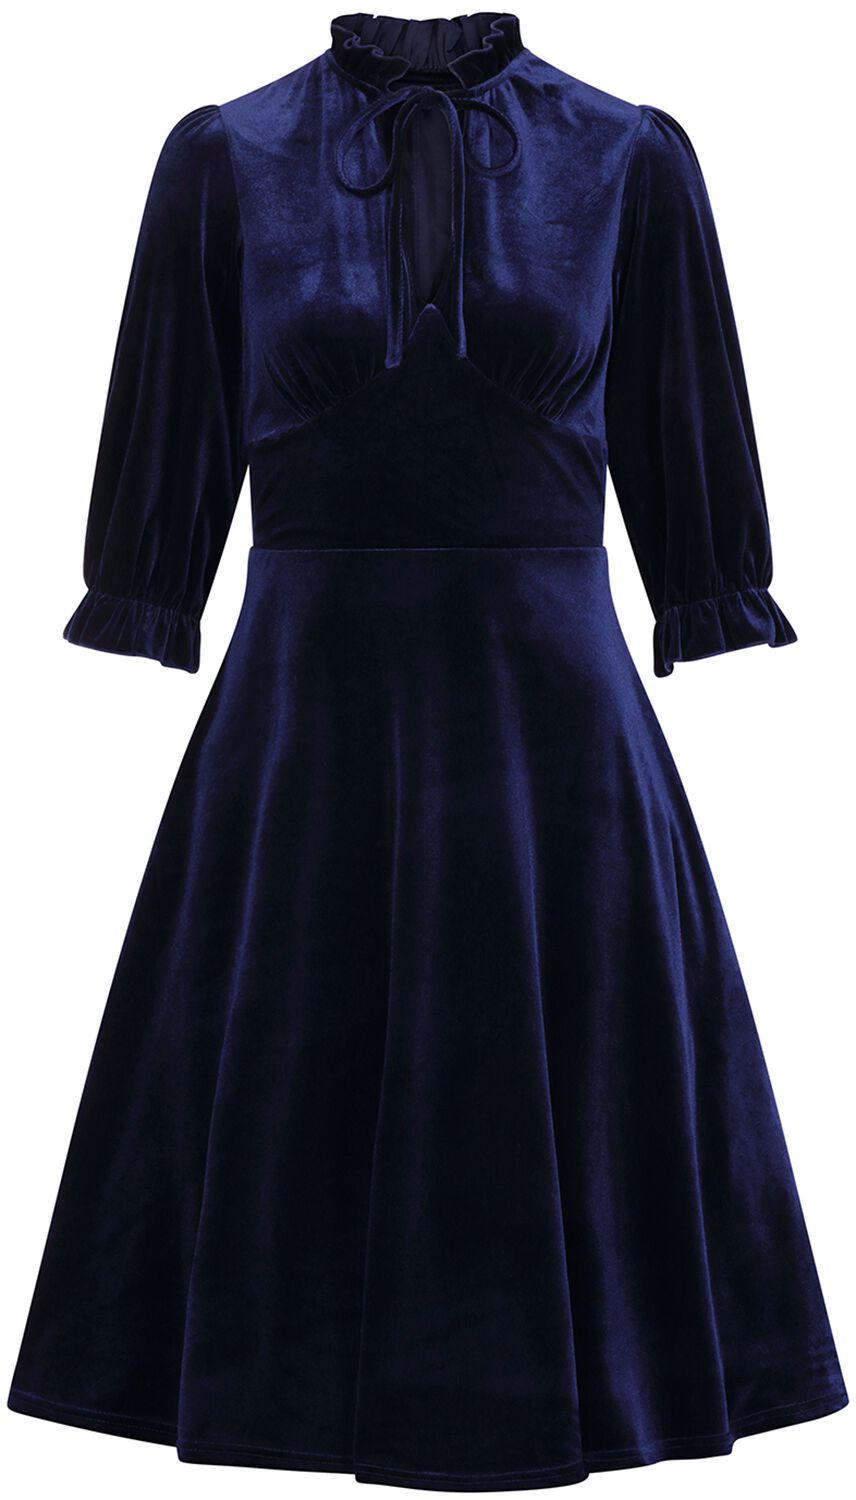 Hell Bunny - Rockabilly Kleid knielang - Orion Dress - XS bis 4XL - für Damen - Größe S - blau von hell bunny